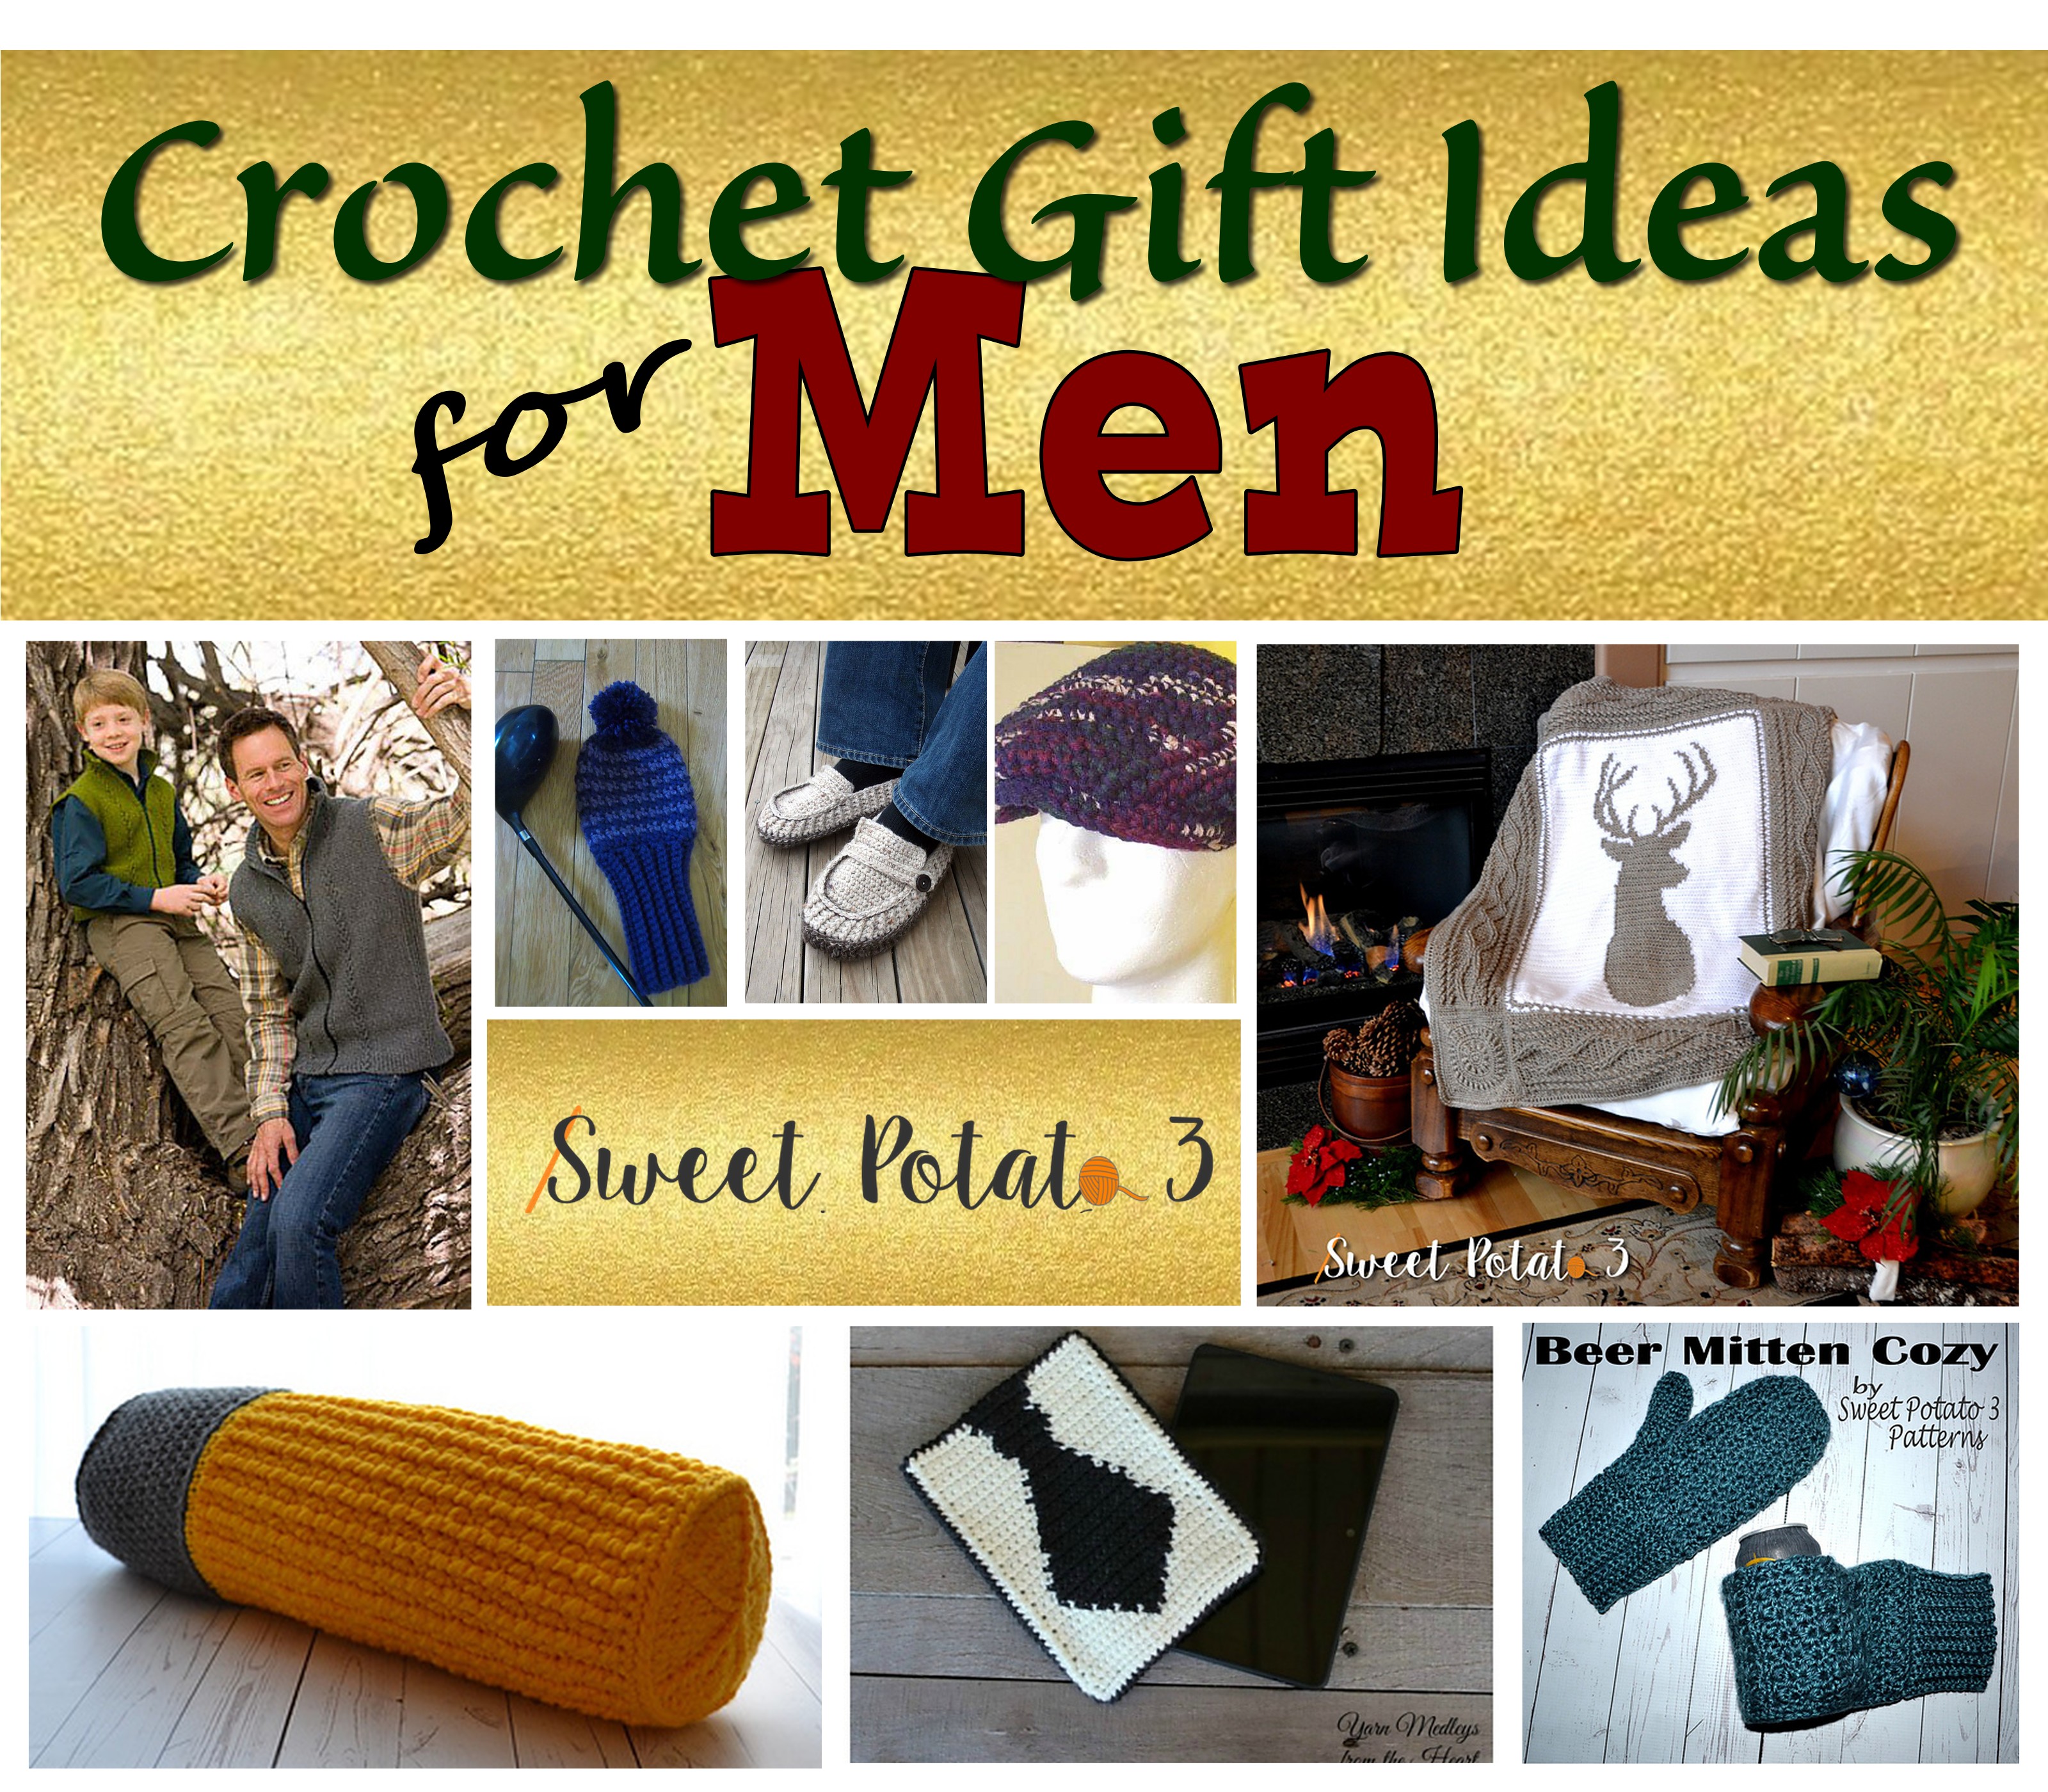 Crochet Gift Ideas for Men for the Holidays - Sweet Potato 3